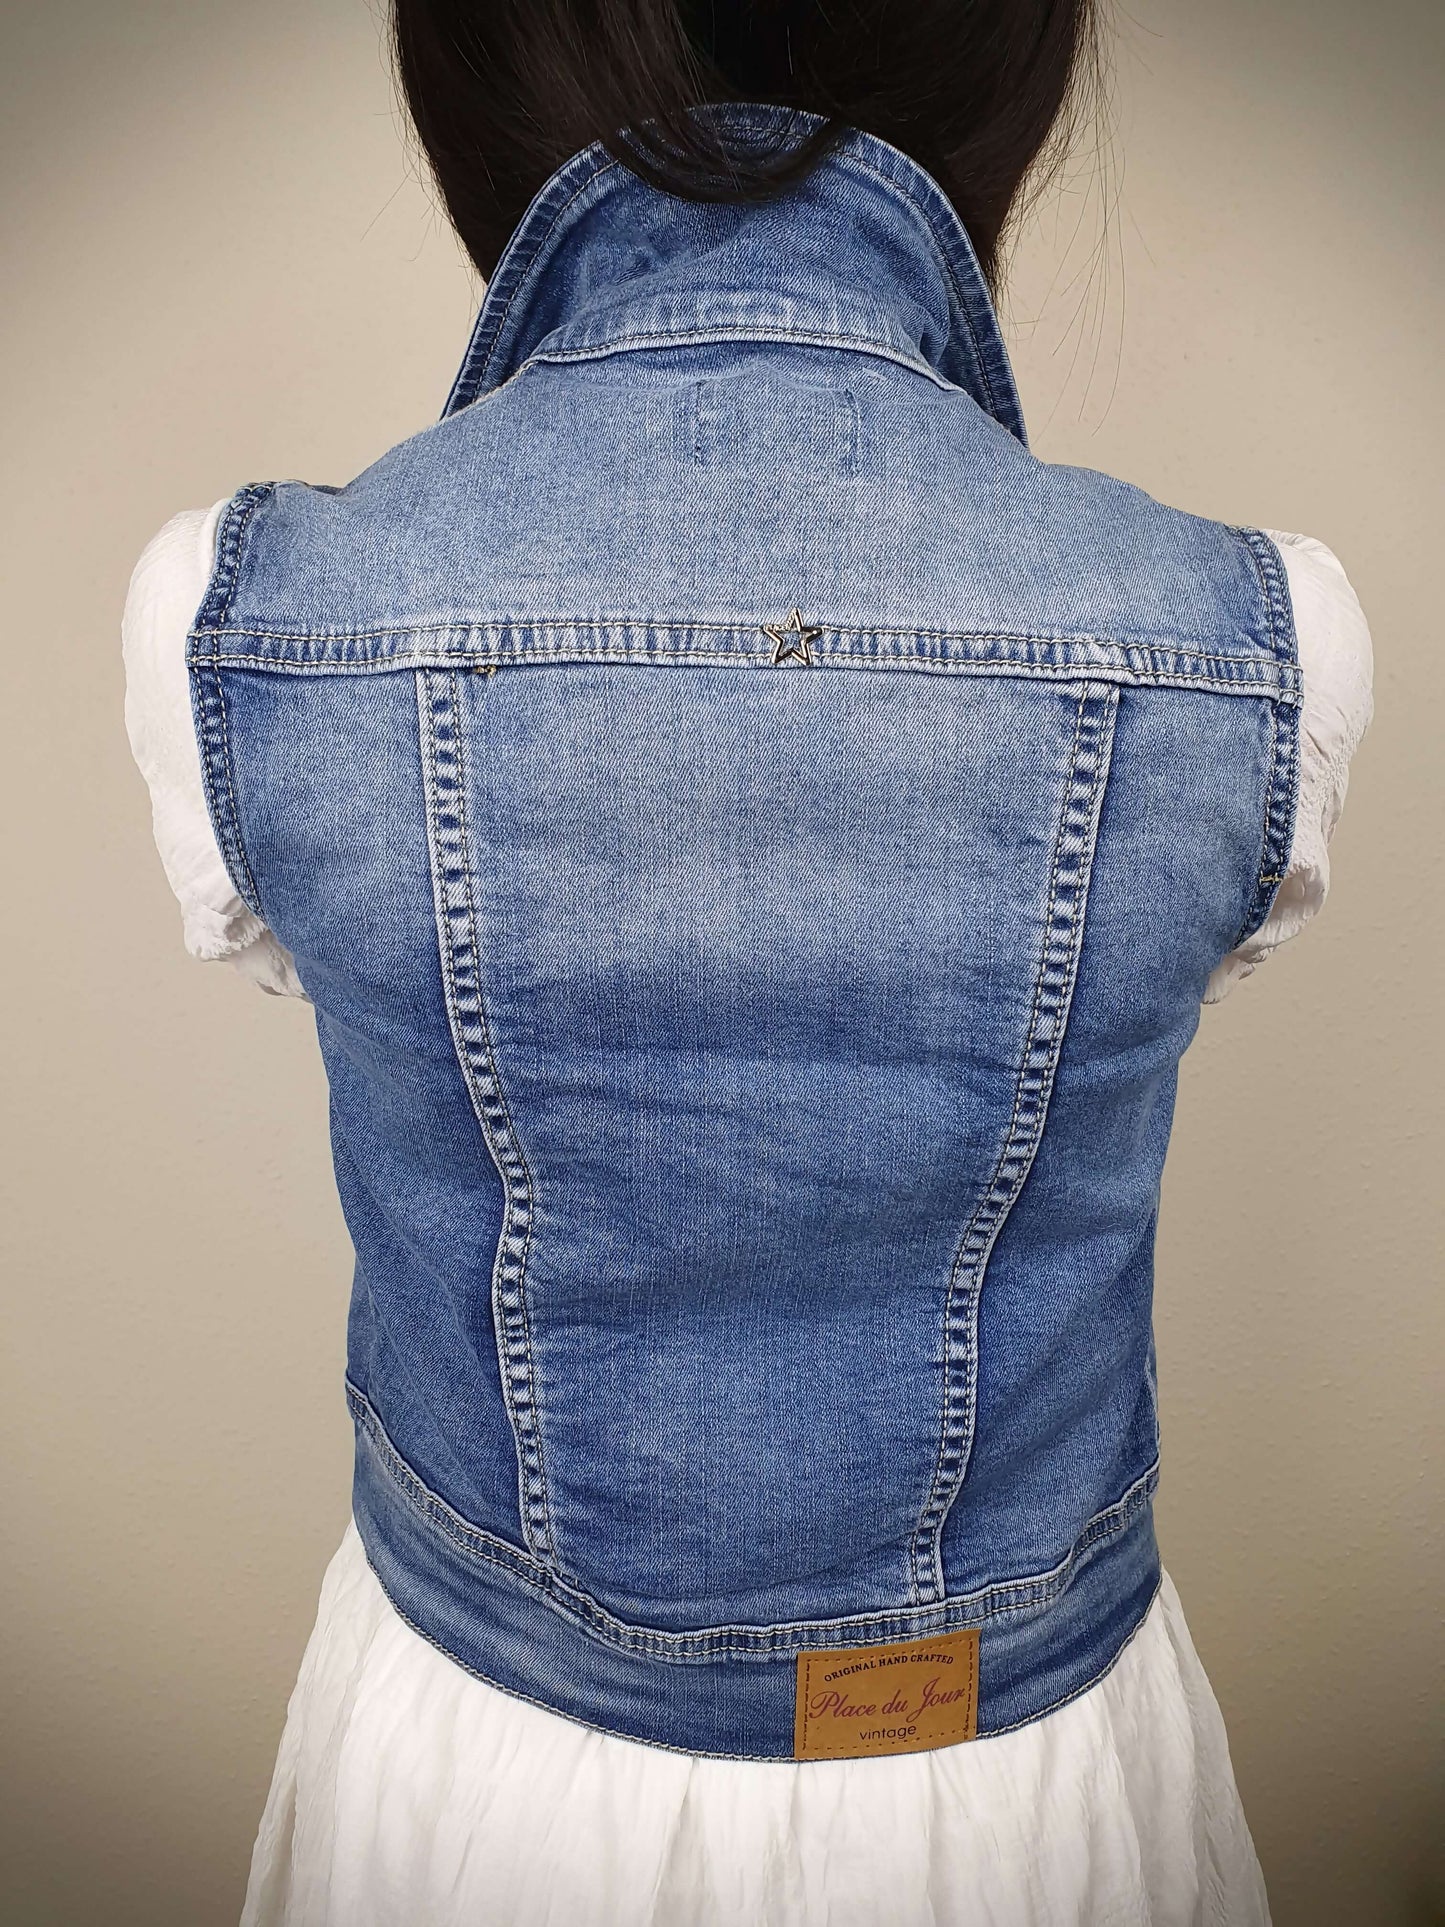 Veste en jean femme sans manche bleu à decouvrir sur www.gayano.fr